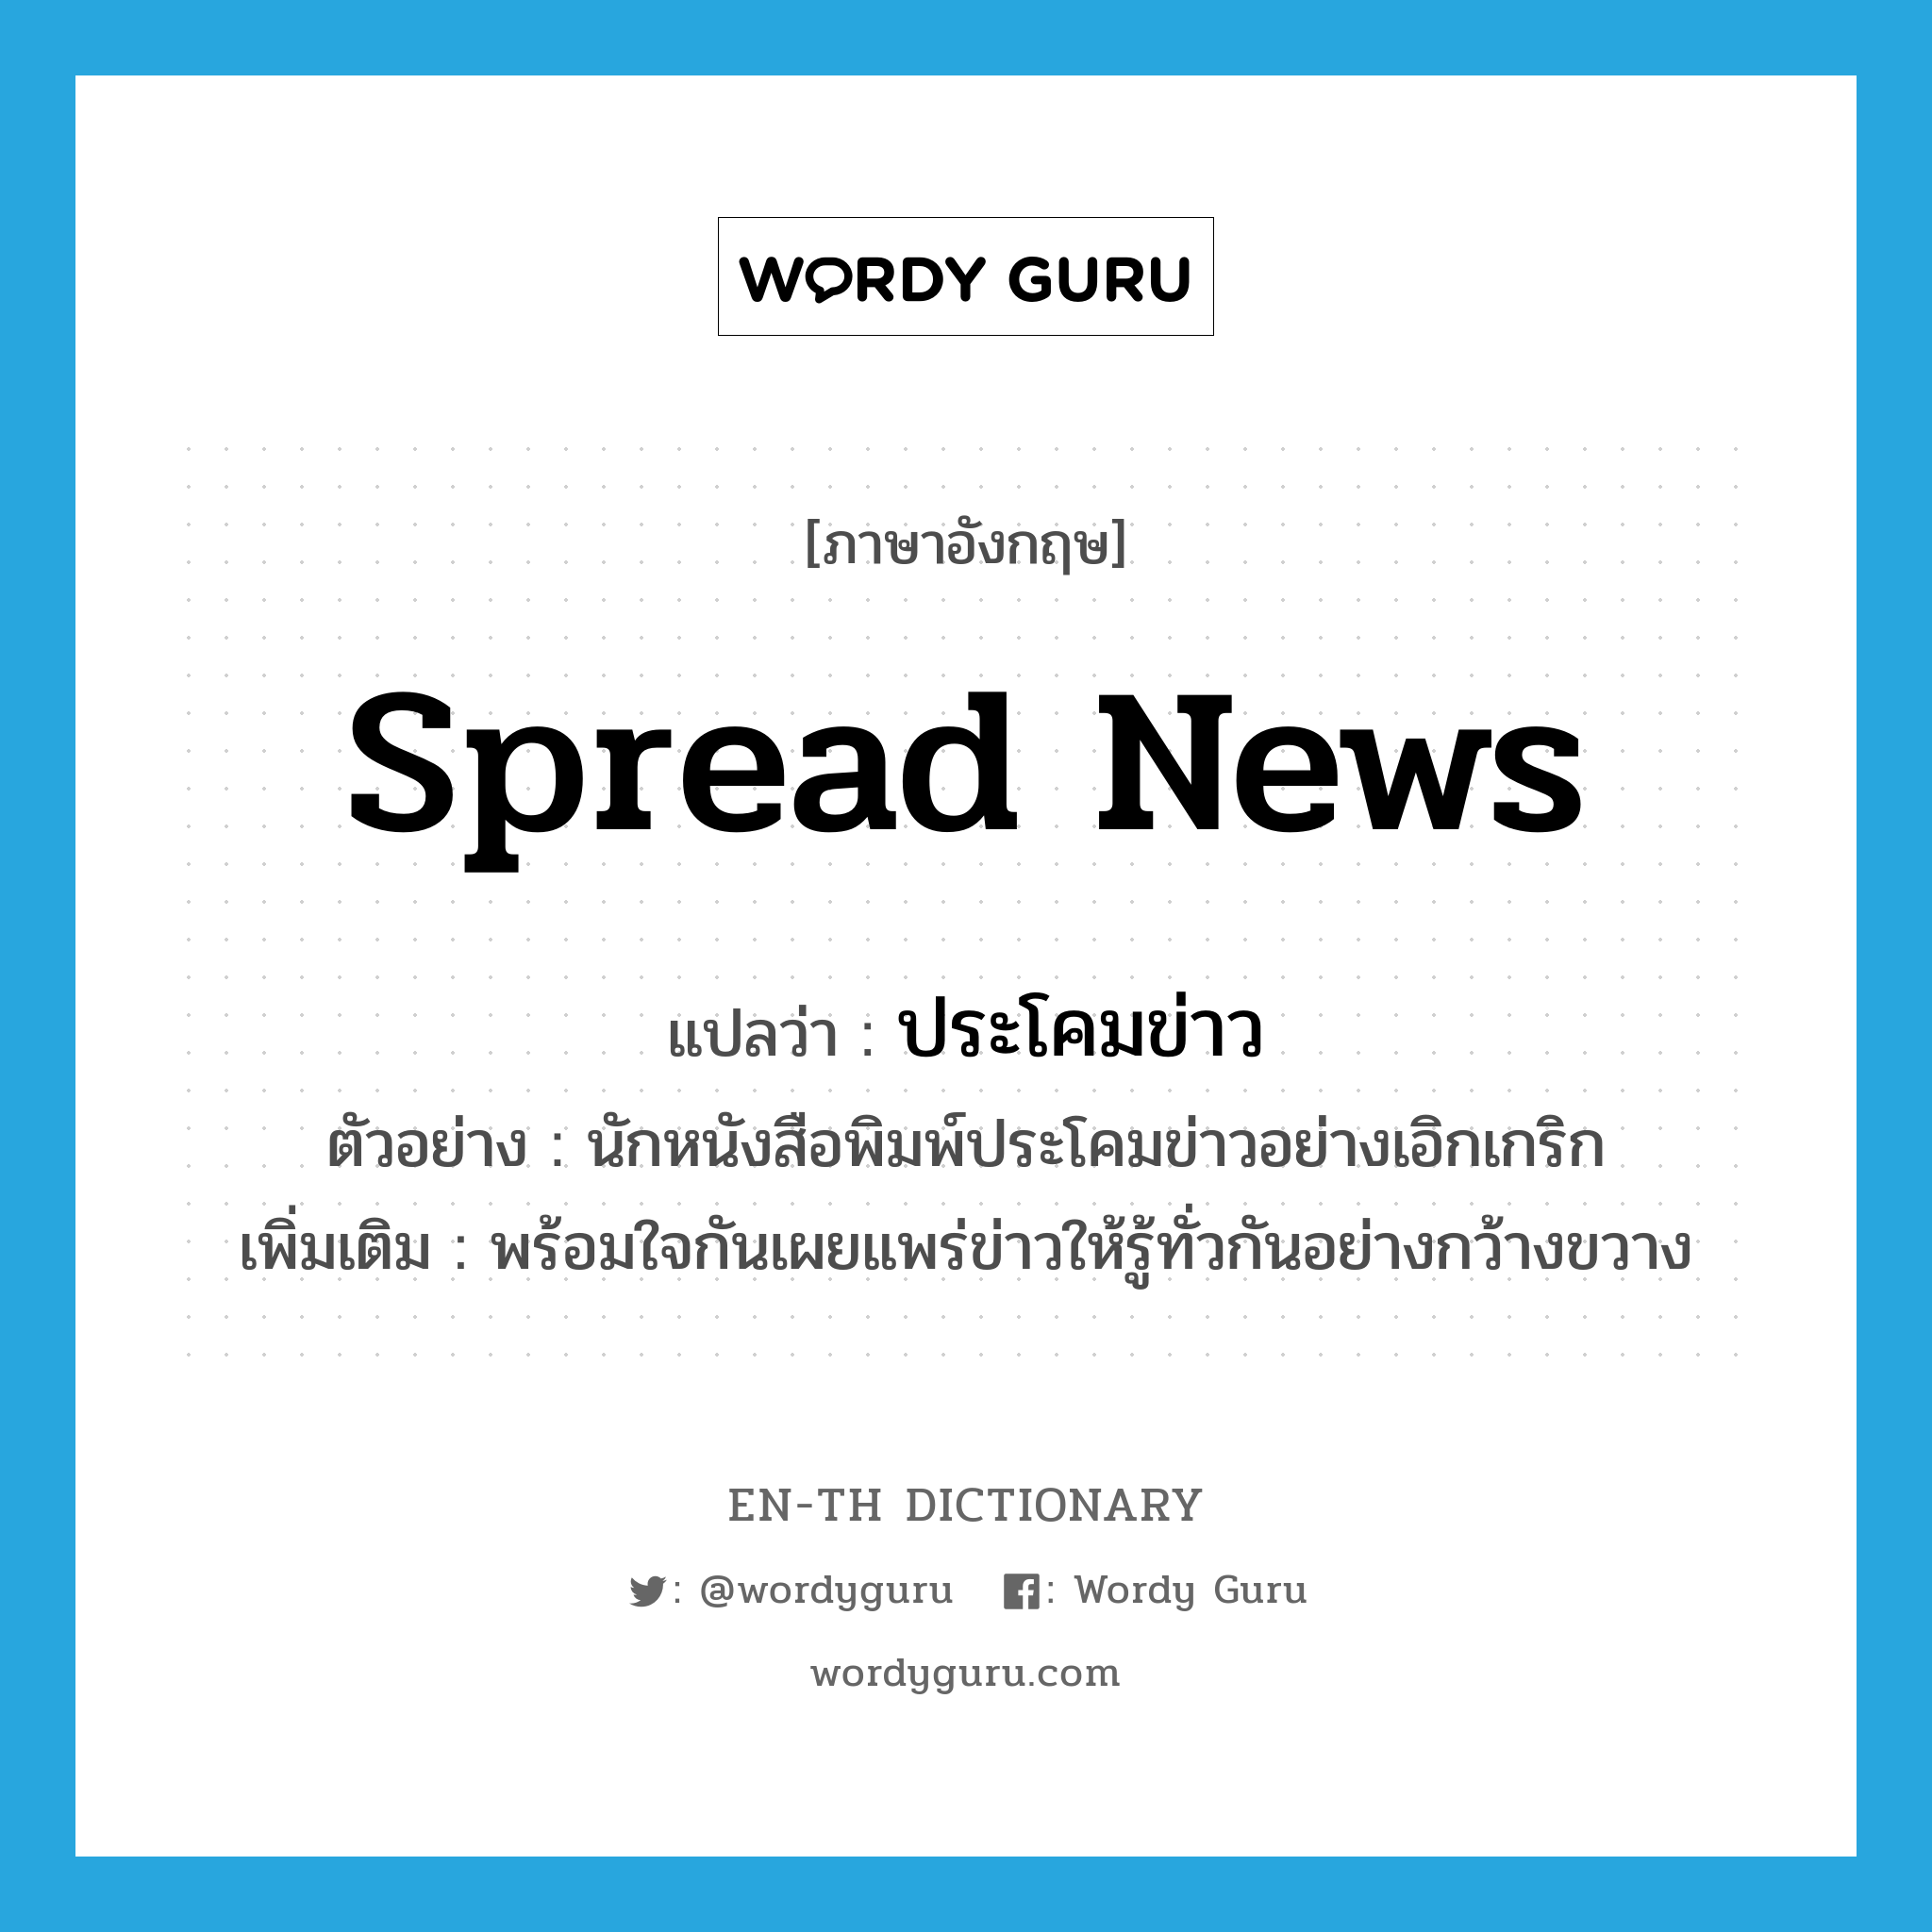 spread news แปลว่า?, คำศัพท์ภาษาอังกฤษ spread news แปลว่า ประโคมข่าว ประเภท V ตัวอย่าง นักหนังสือพิมพ์ประโคมข่าวอย่างเอิกเกริก เพิ่มเติม พร้อมใจกันเผยแพร่ข่าวให้รู้ทั่วกันอย่างกว้างขวาง หมวด V